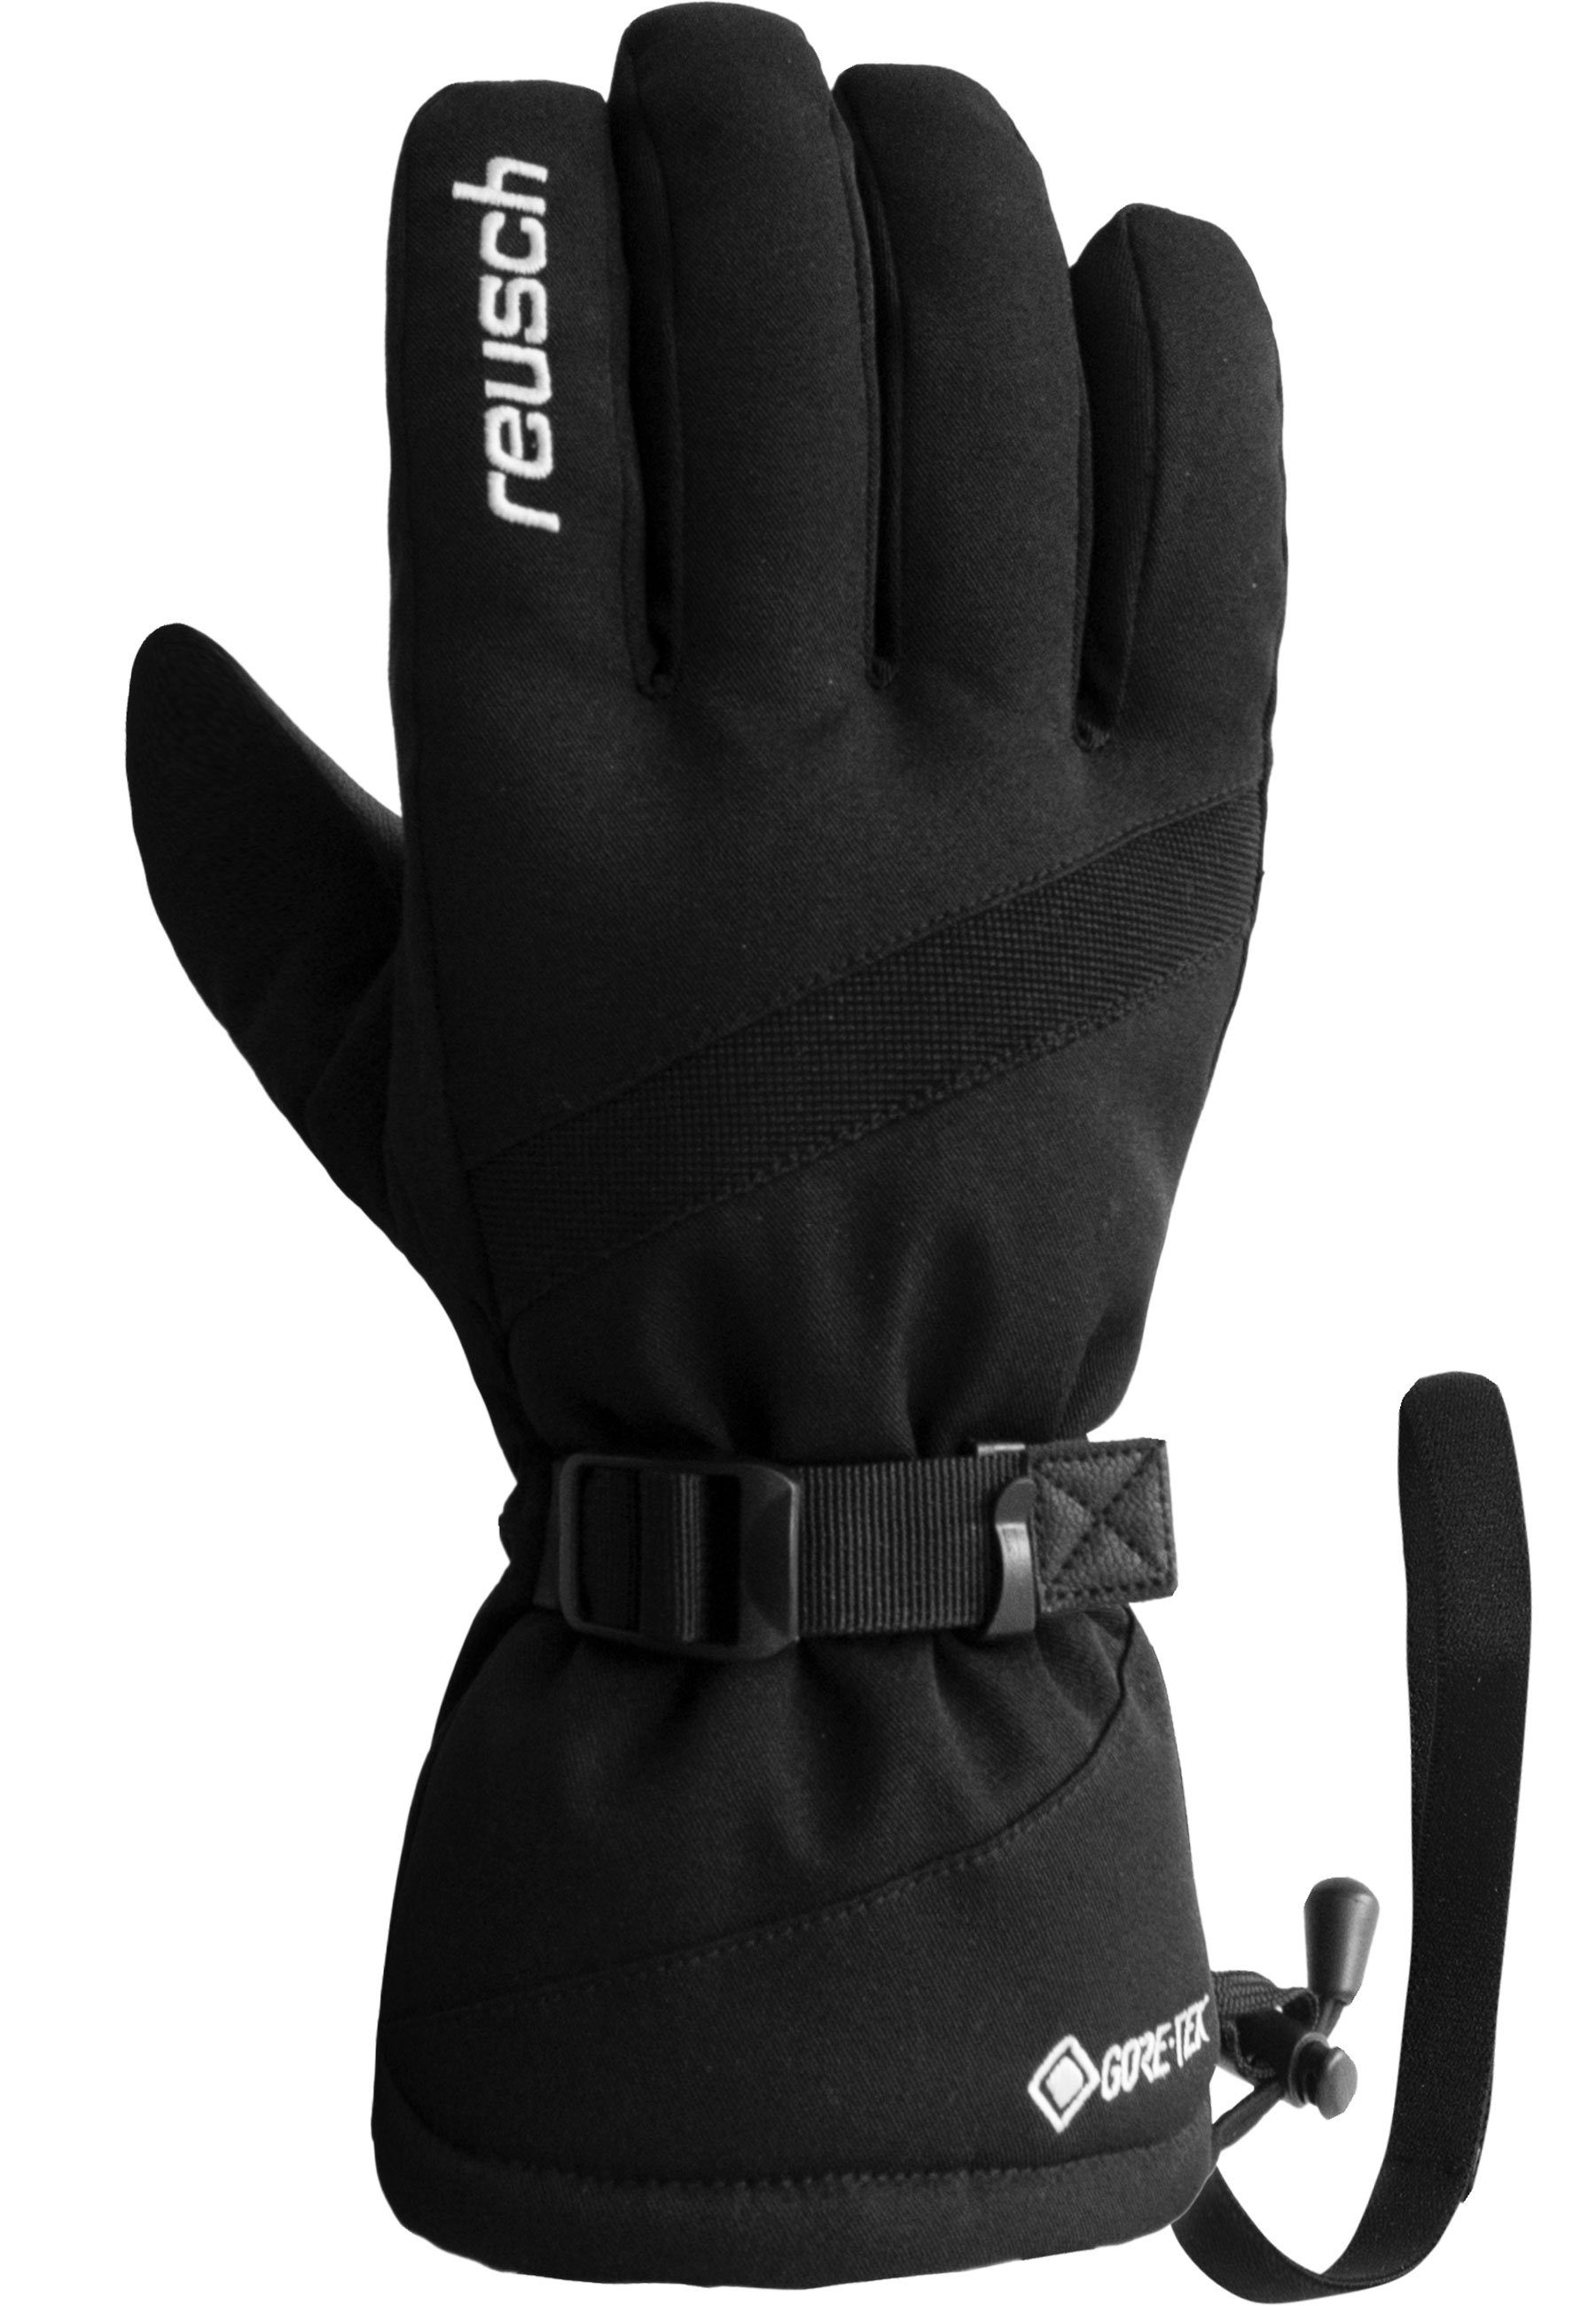 Warm Glove Skihandschuhe wasserdichtem atmungsaktivem Material GORE-TEX Winter und Reusch aus